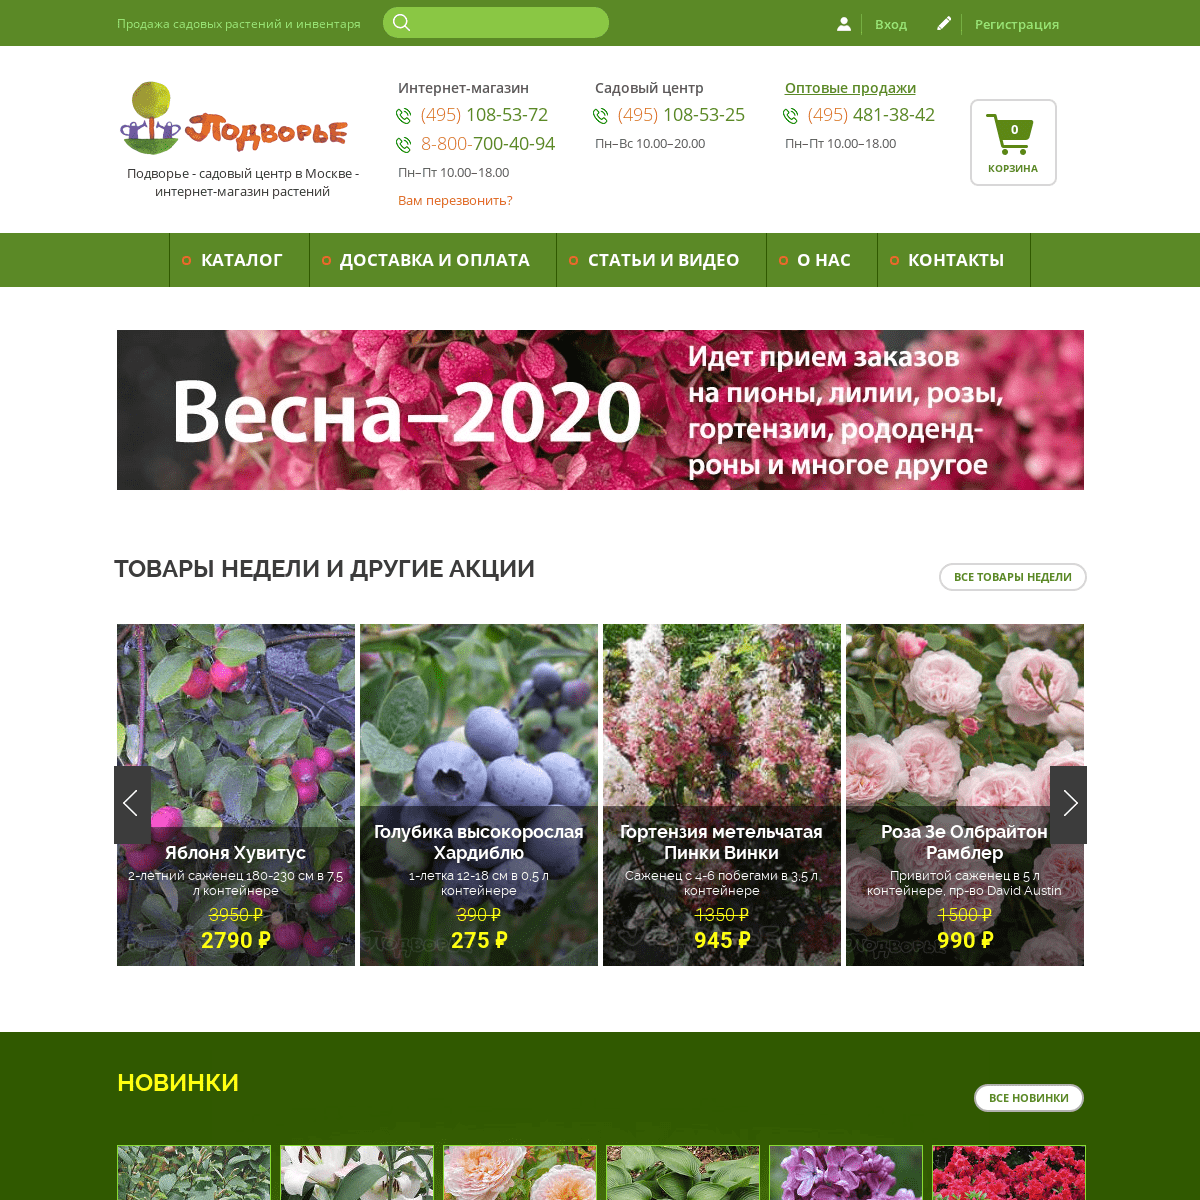 Подворье - садовый центр в Москве - интернет-магазин растений